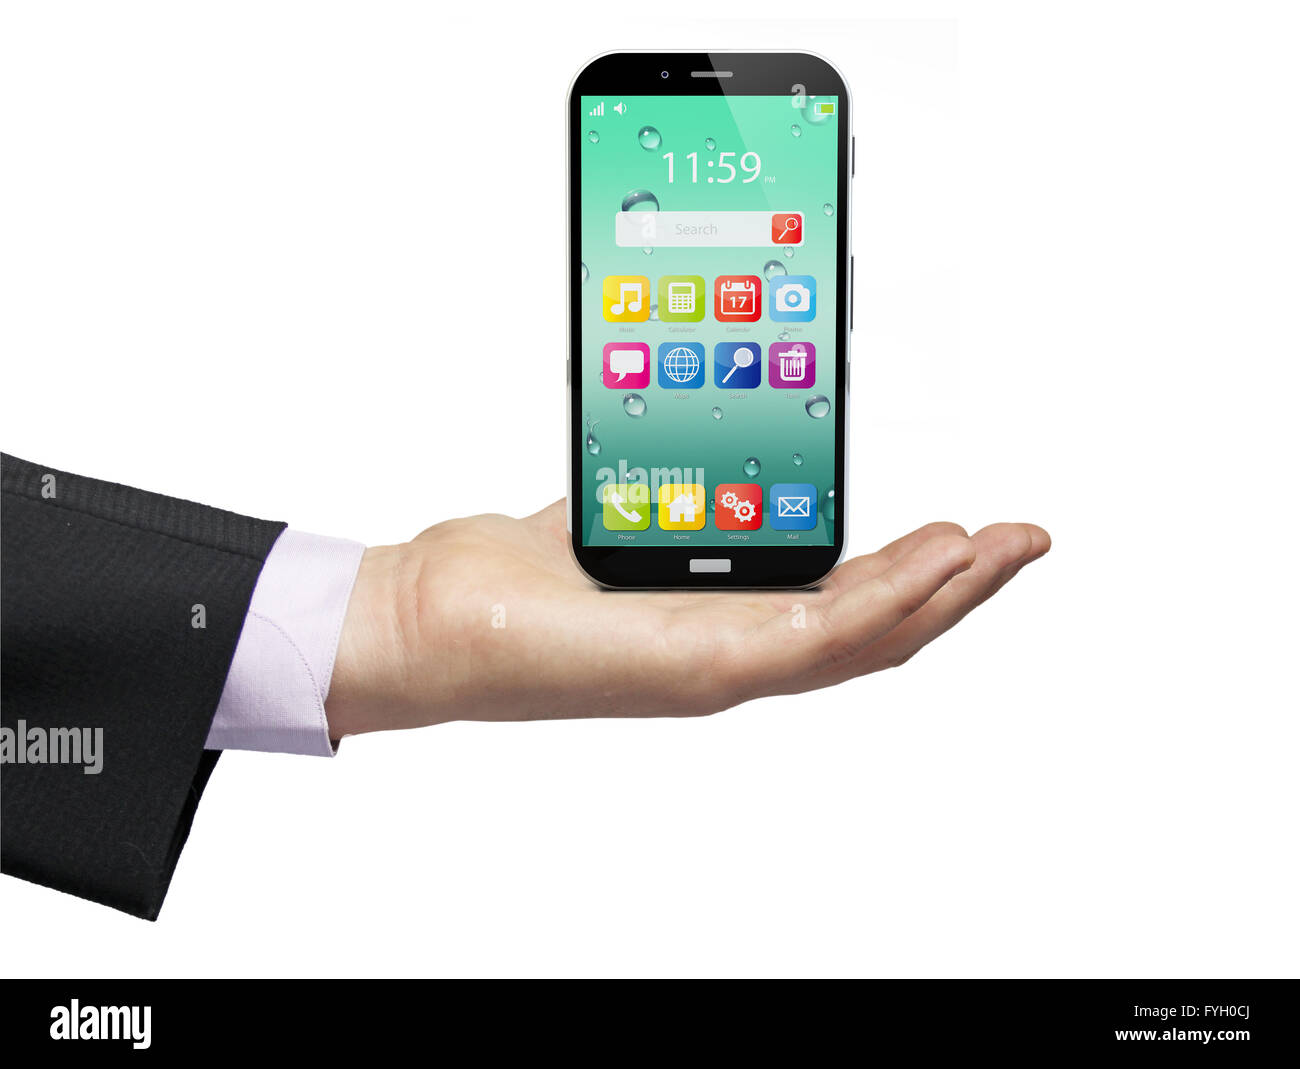 Touchscreen-Smartphones mit bunten Oberfläche mit Farbe Symbole und Schaltflächen, die über einen Geschäftsmann Hand auf weißen Zeitmessung isoliert Stockfoto